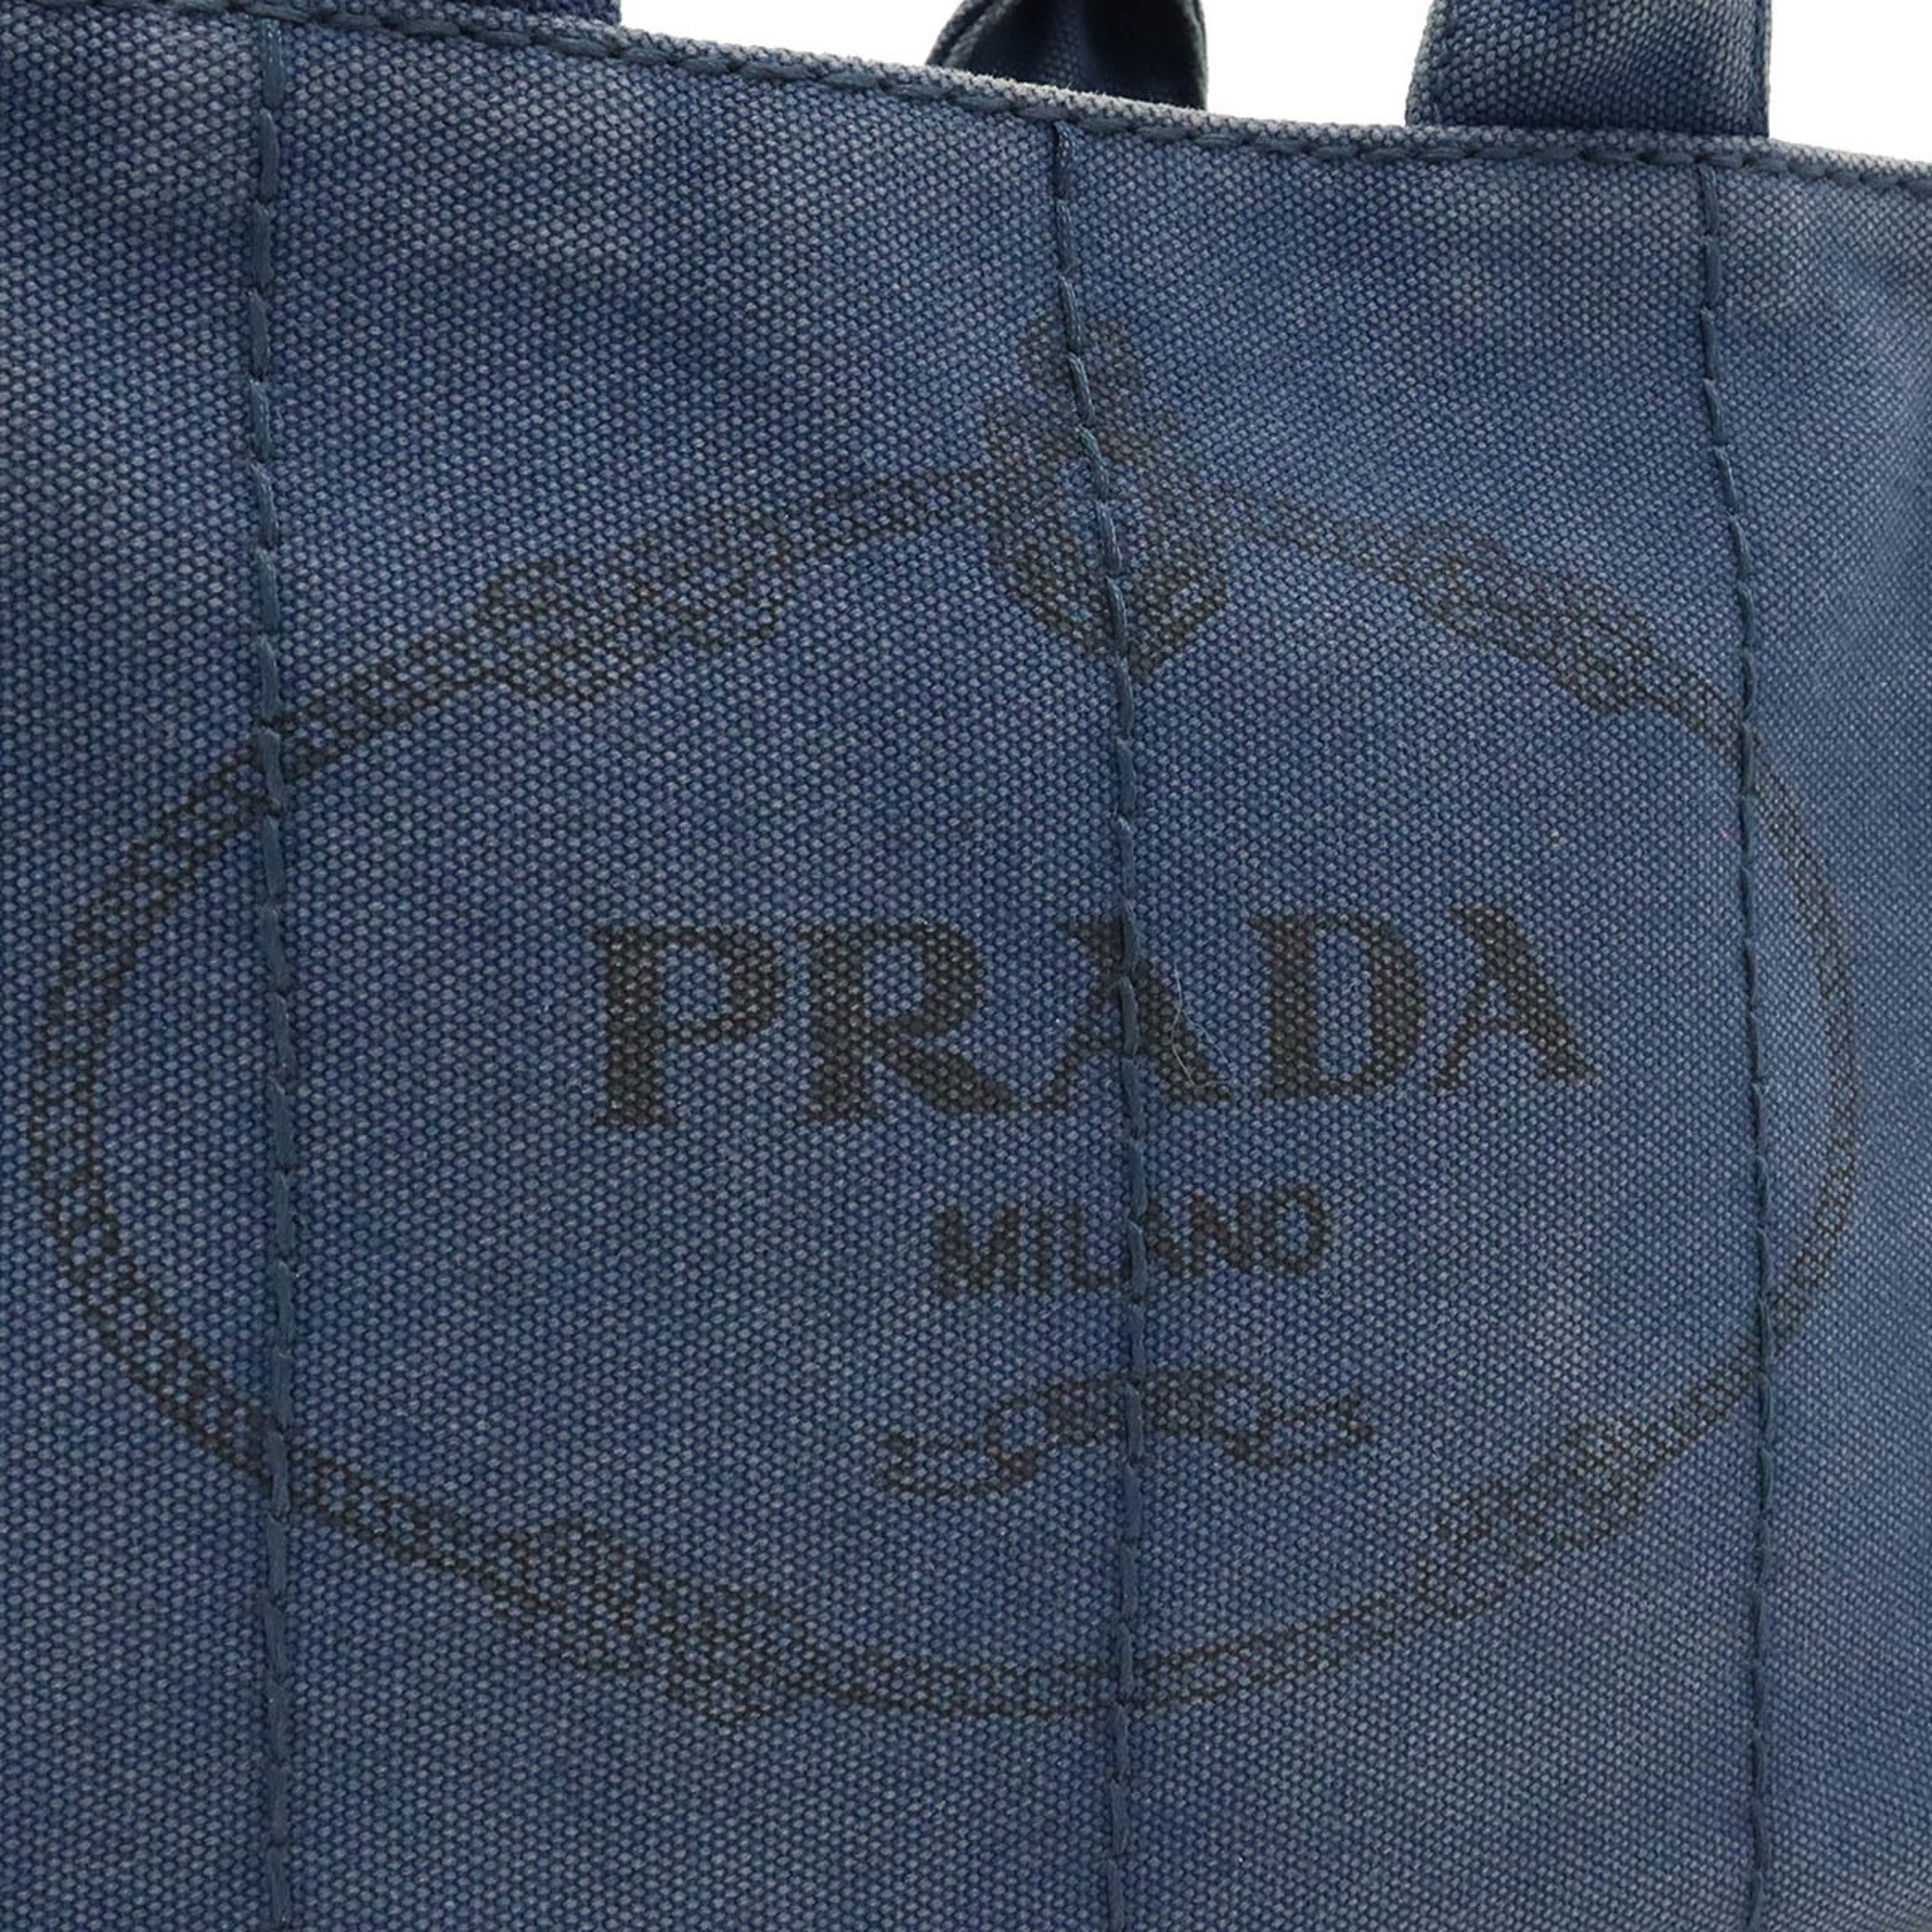 PRADA CANAPA Tote Bag, Handbag, Shoulder Canvas, Navy, 1BG439